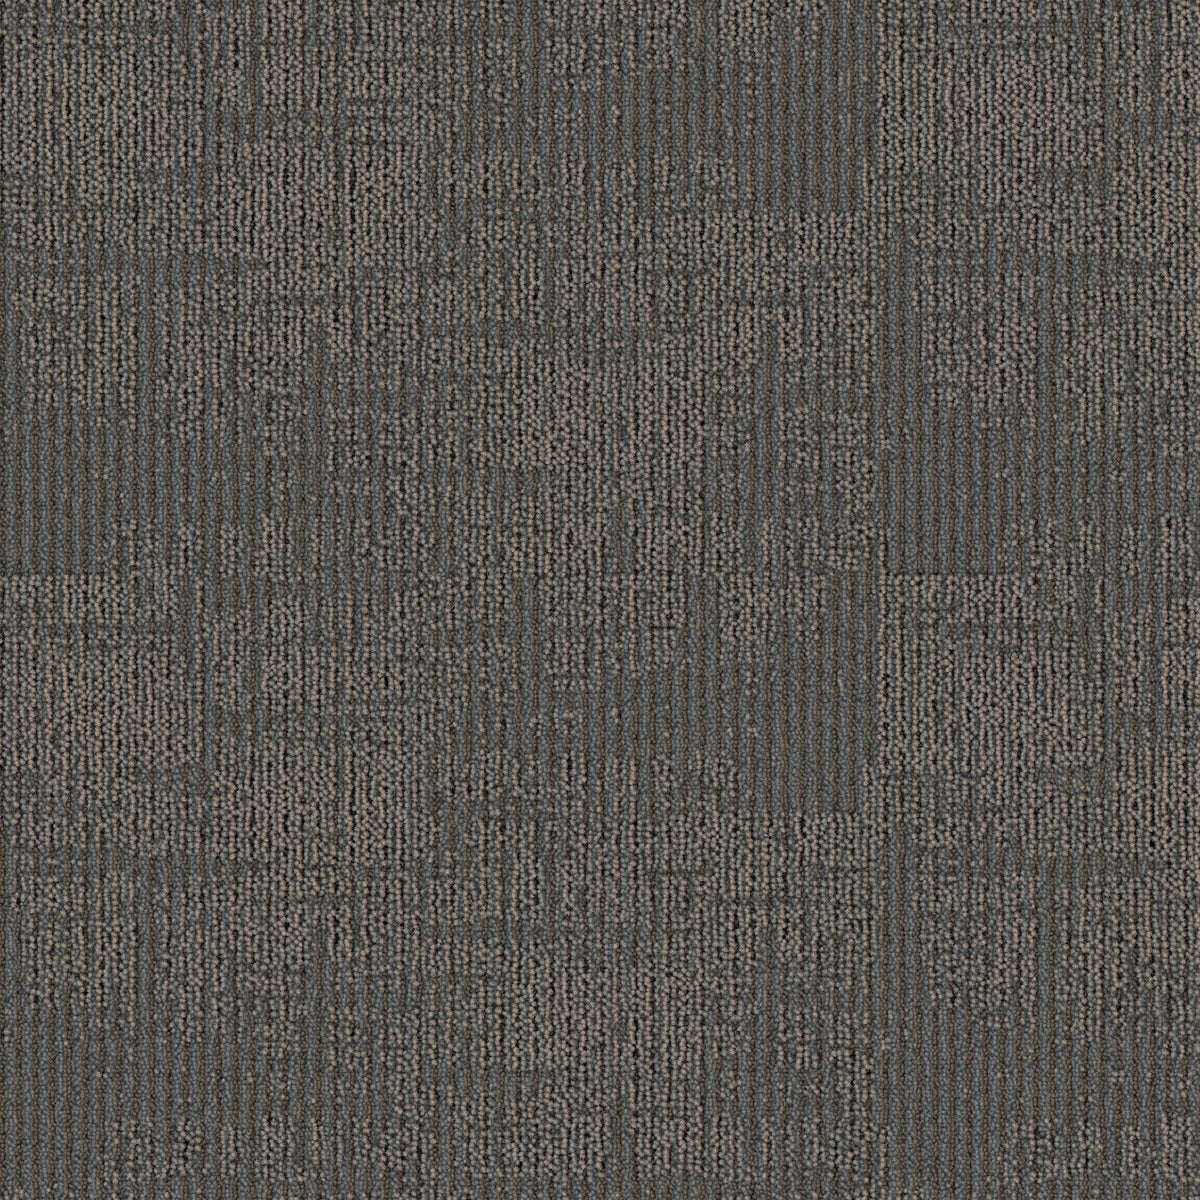 Mohawk Group - Artisanal - Threaded Craft - Carpet Tile - Shell